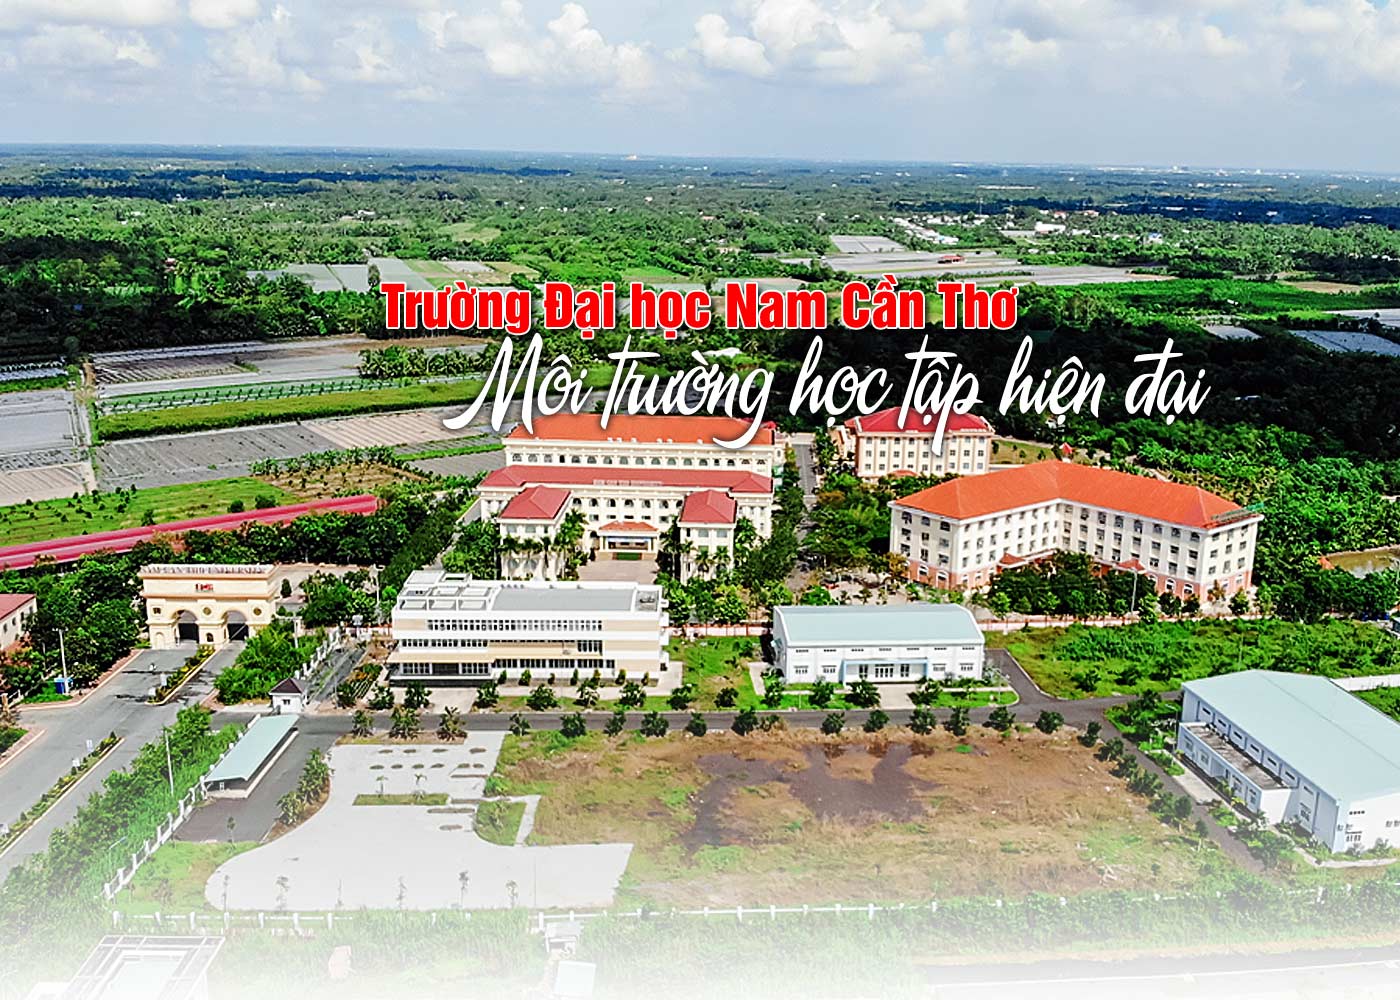 Trường Đại học Nam Cần Thơ - Môi trường học tập hiện đại - Ảnh 1